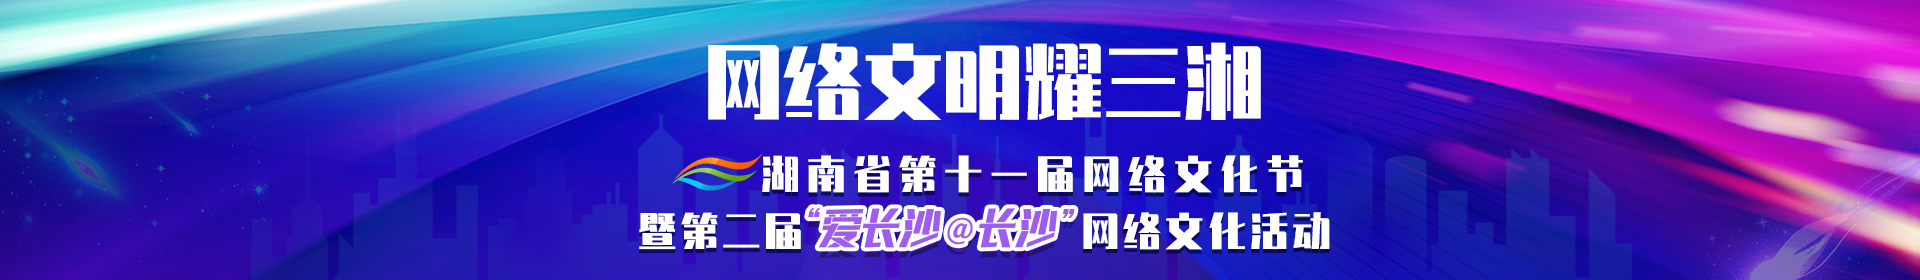 网络文明耀三湘——湖南省第十一届网络文化节